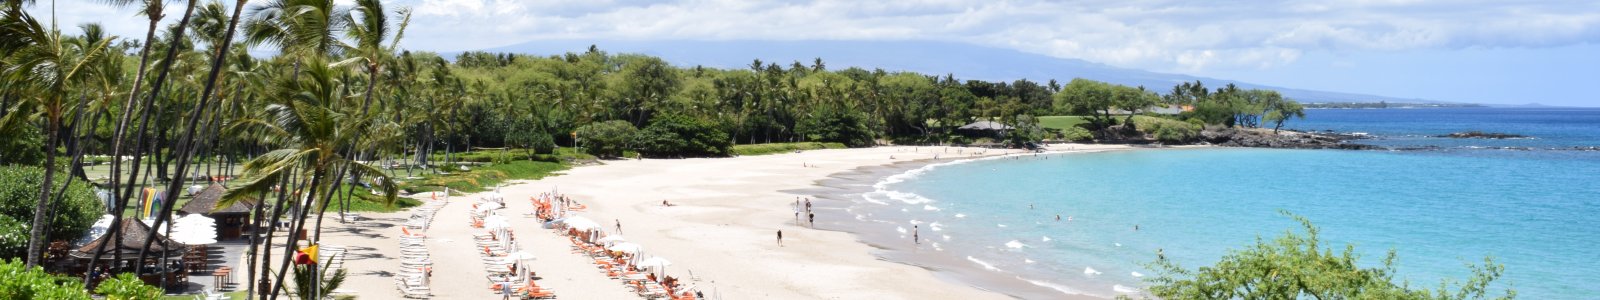 Big Island of Hawaii – Kohala Coast Rentals – Waikoloa to Mauna Lani and Mauna Kea Resorts